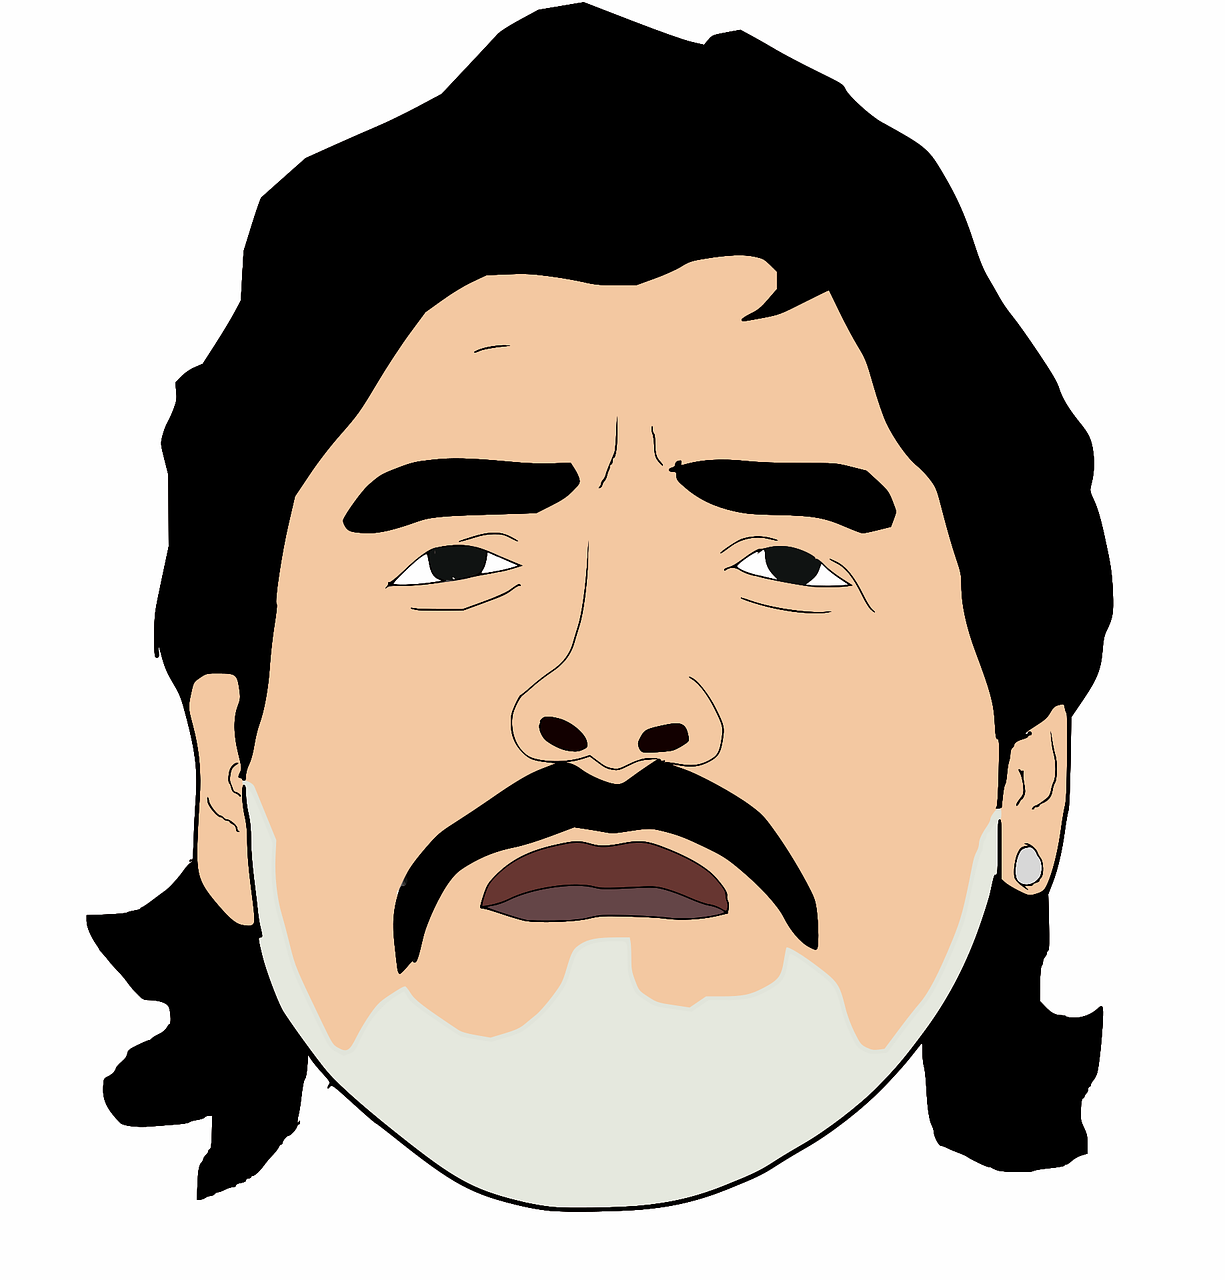 A drawing of Diego Maradona